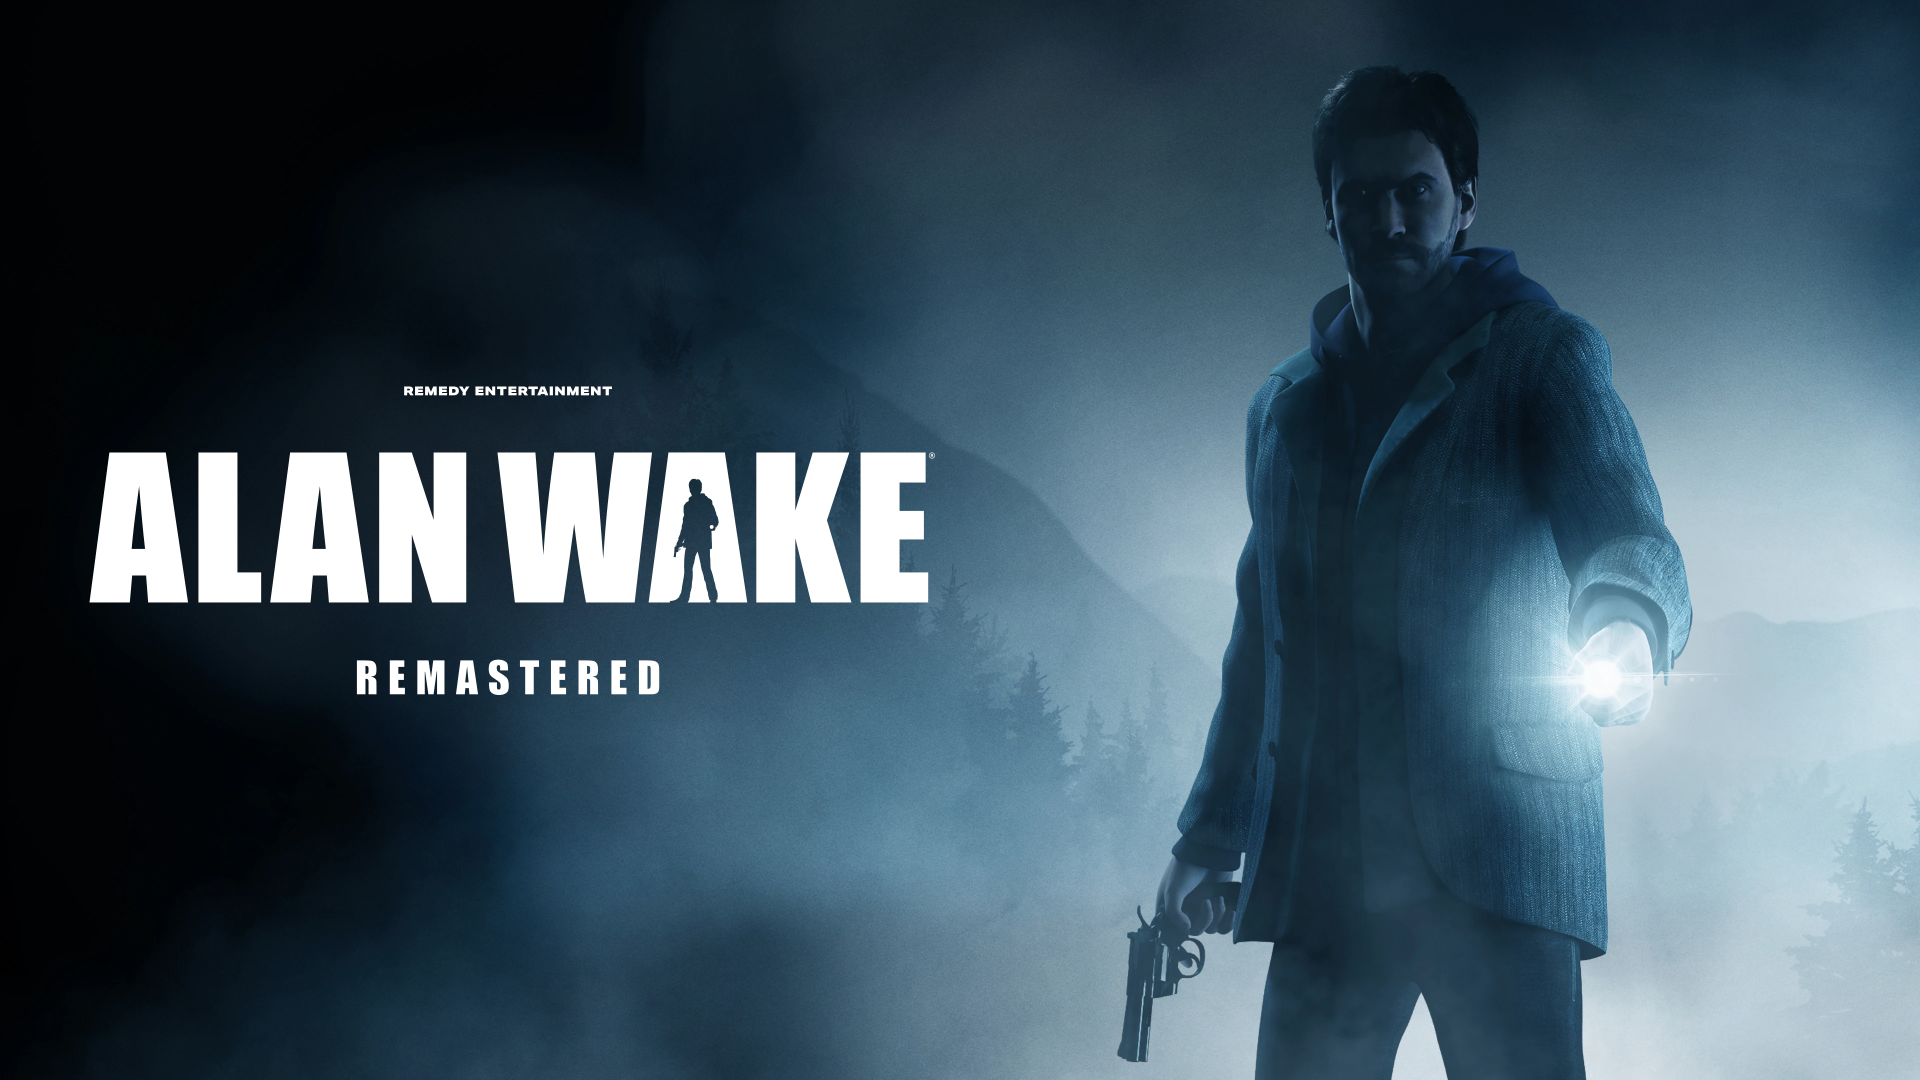 Análise | Alan Wake Remaster traz o terror de volta na nova geração com maestria